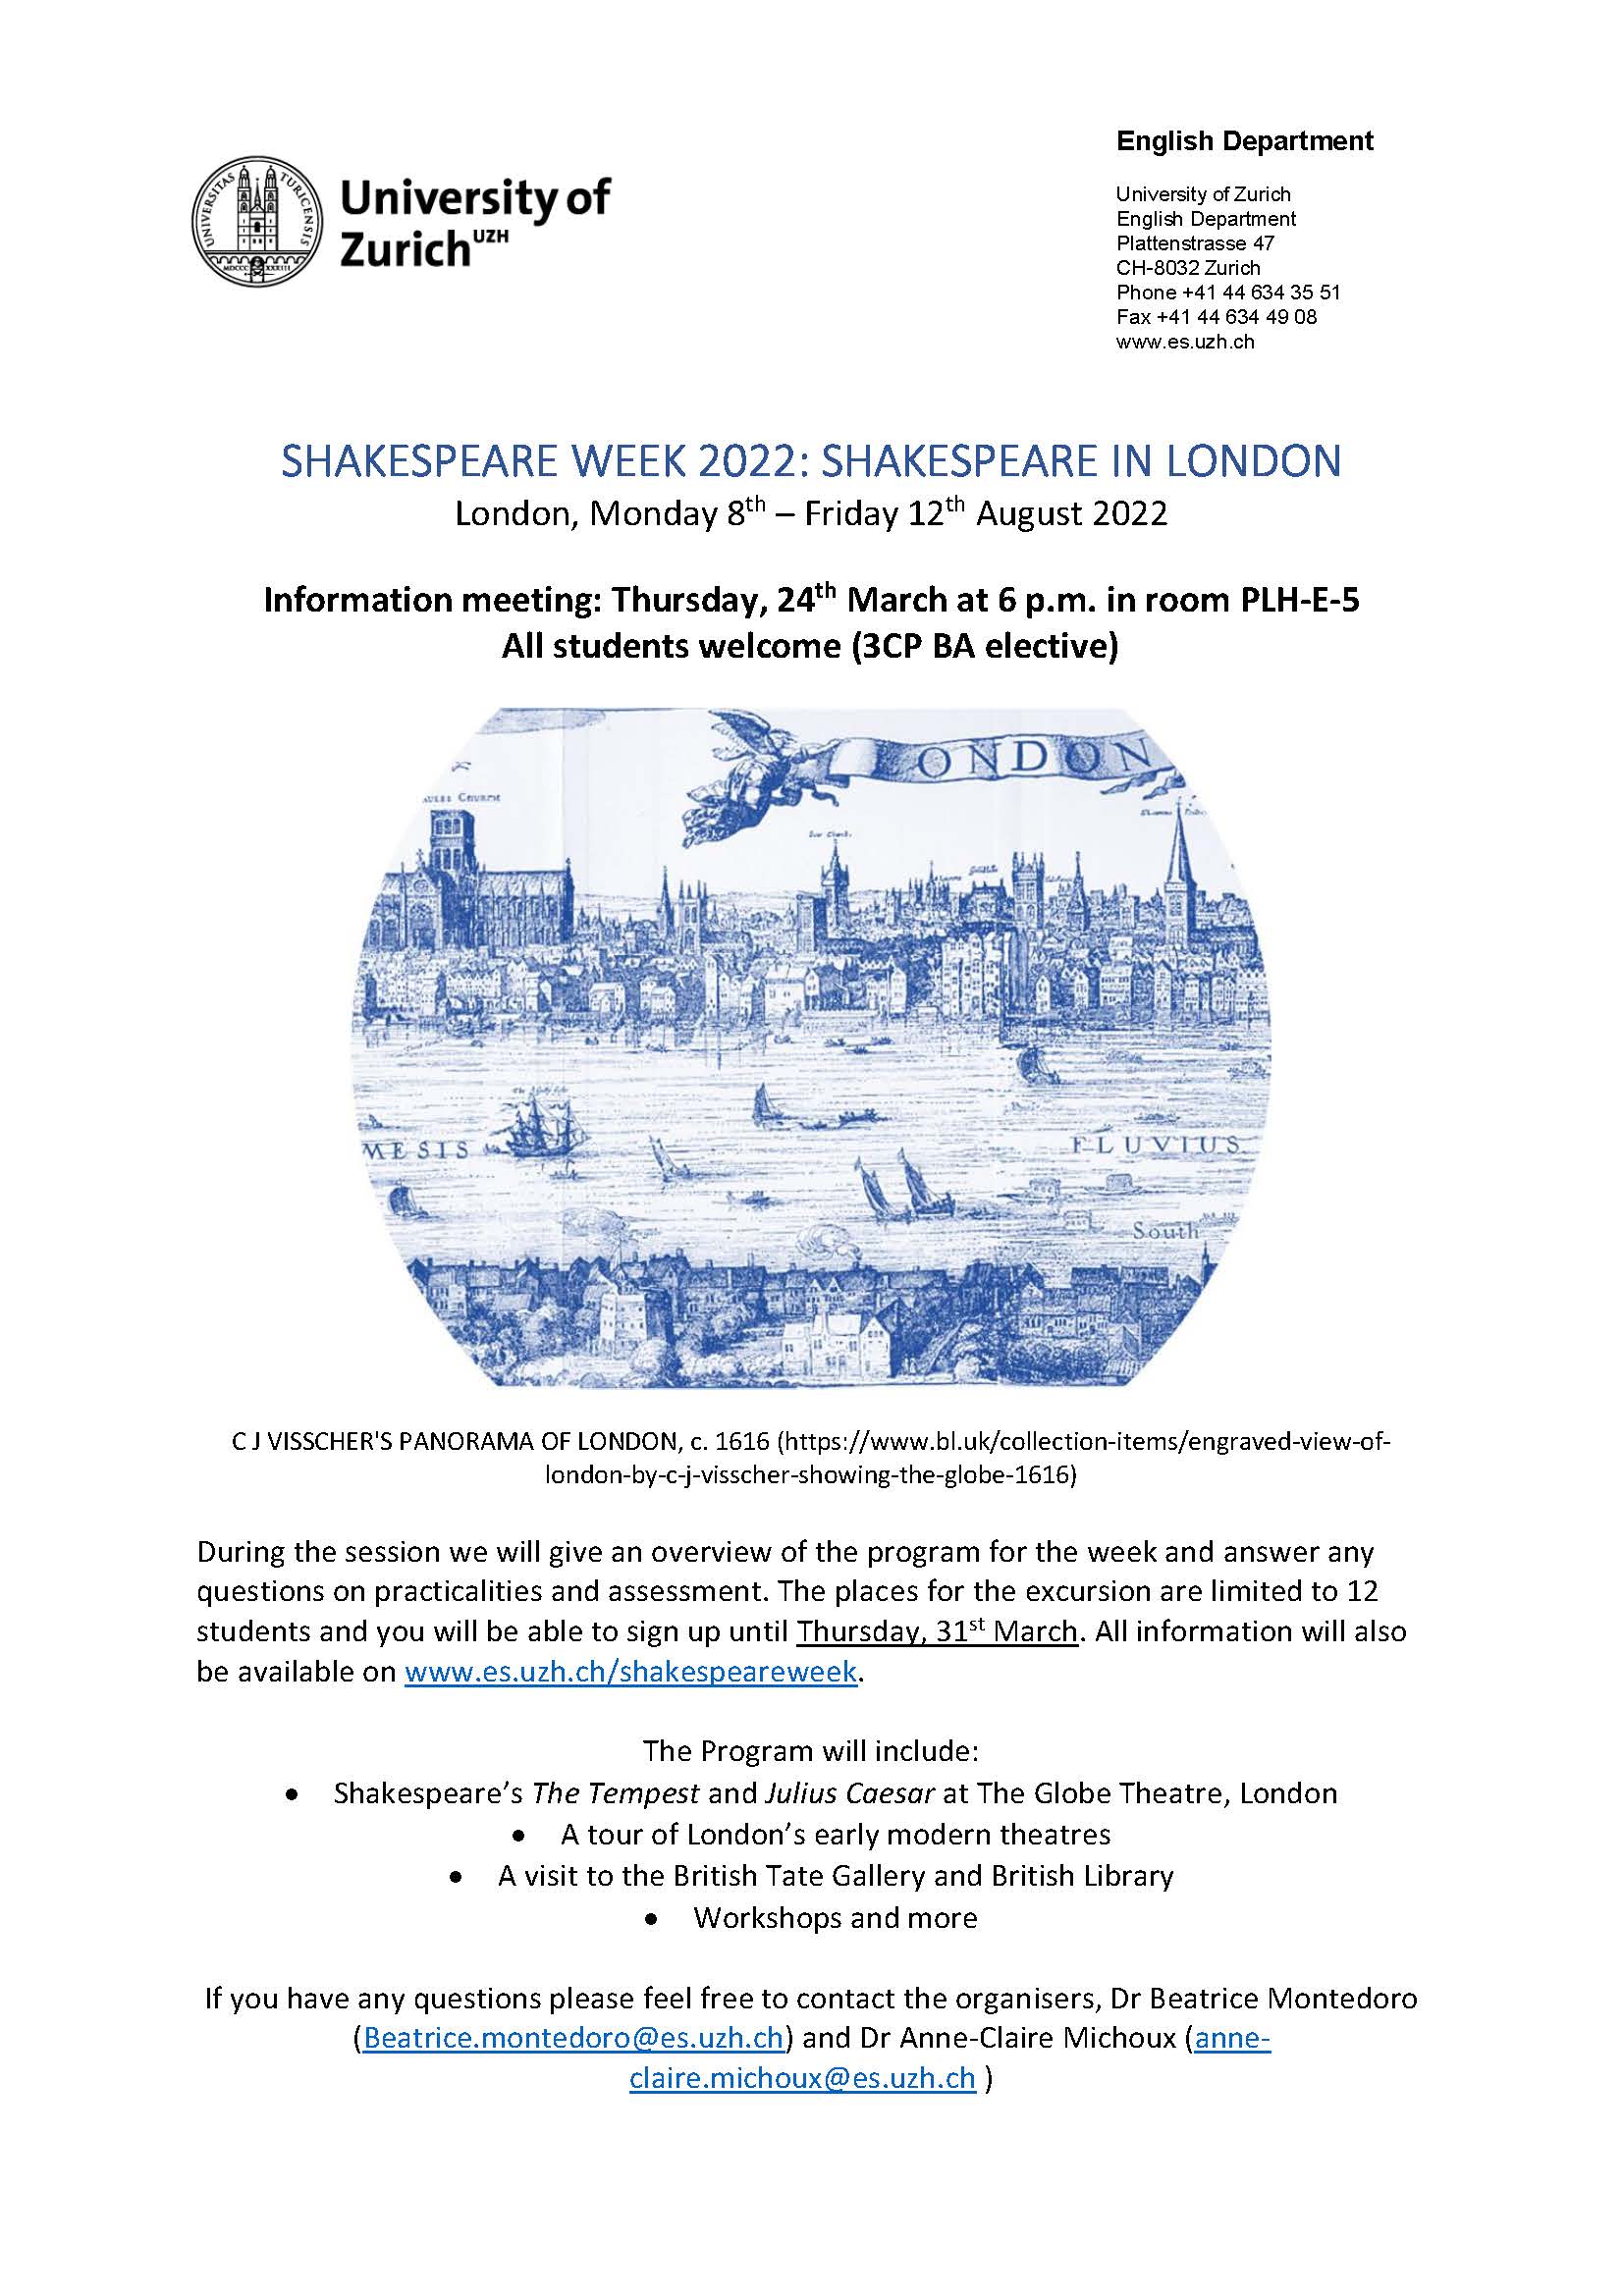 Shakespeare Week - Information Meeting